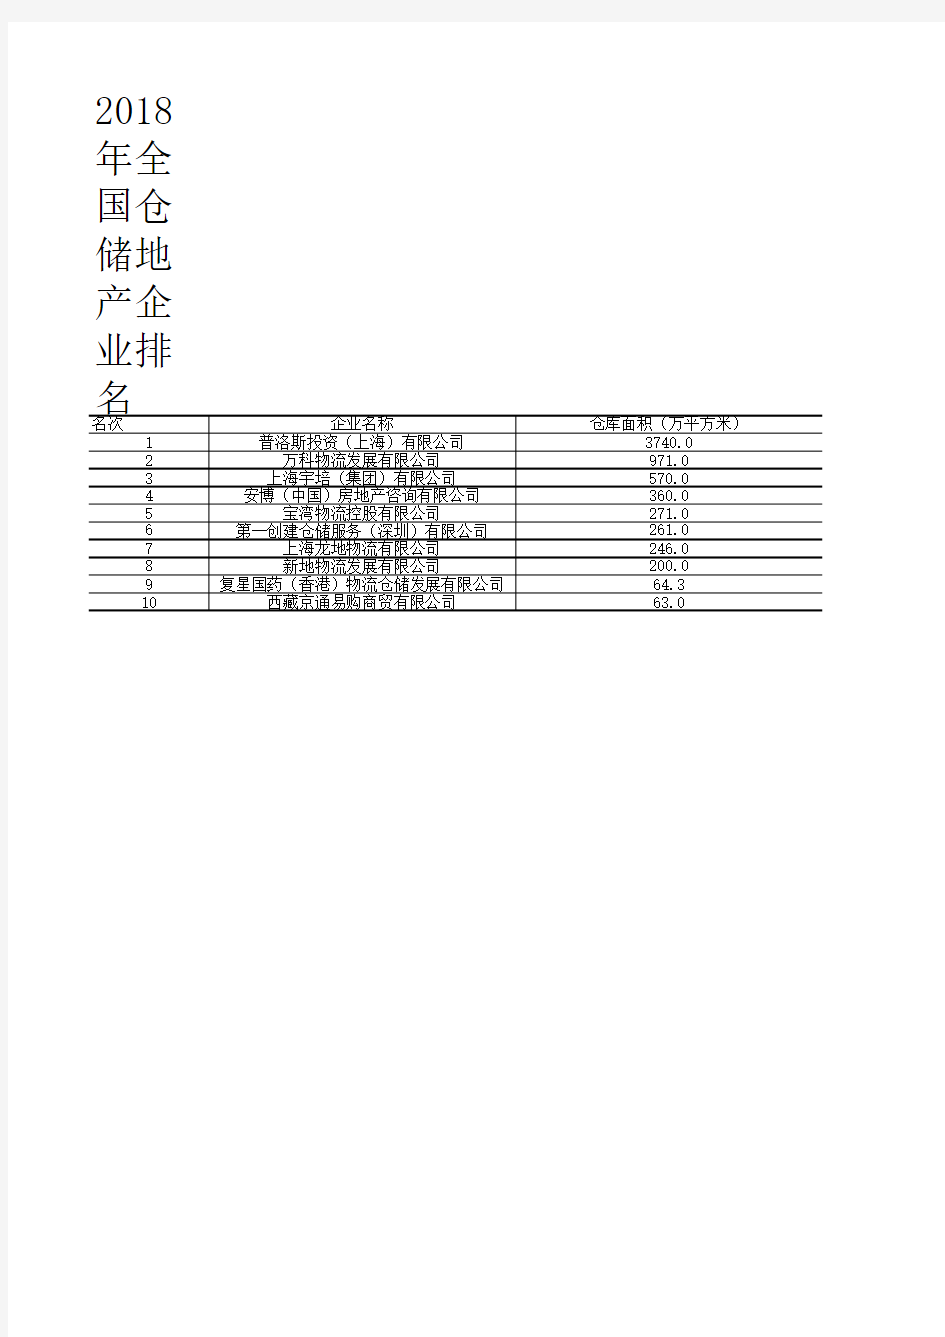 中国物流年鉴全国各省市区统计数据：2018年全国仓储地产企业排名